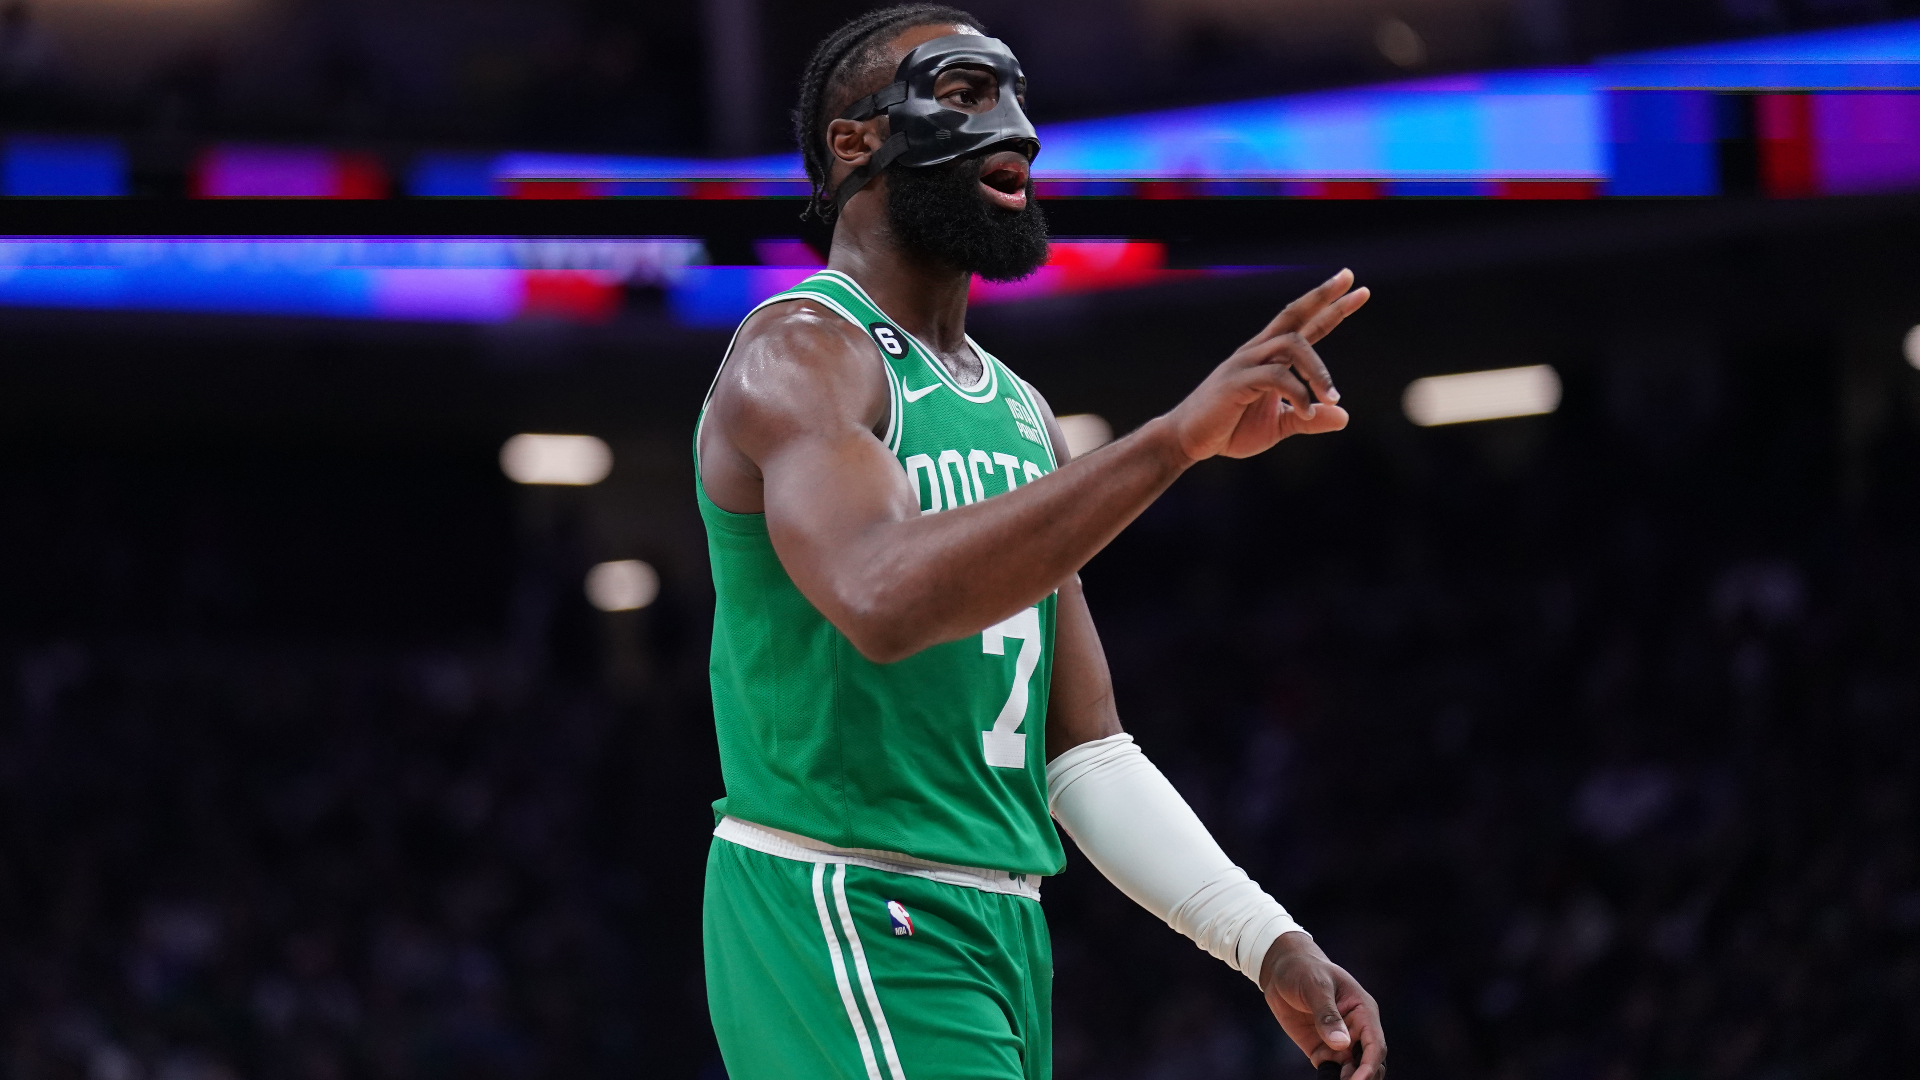 Jaylen Brown's Future in Focus After Poor Performance in Celtics